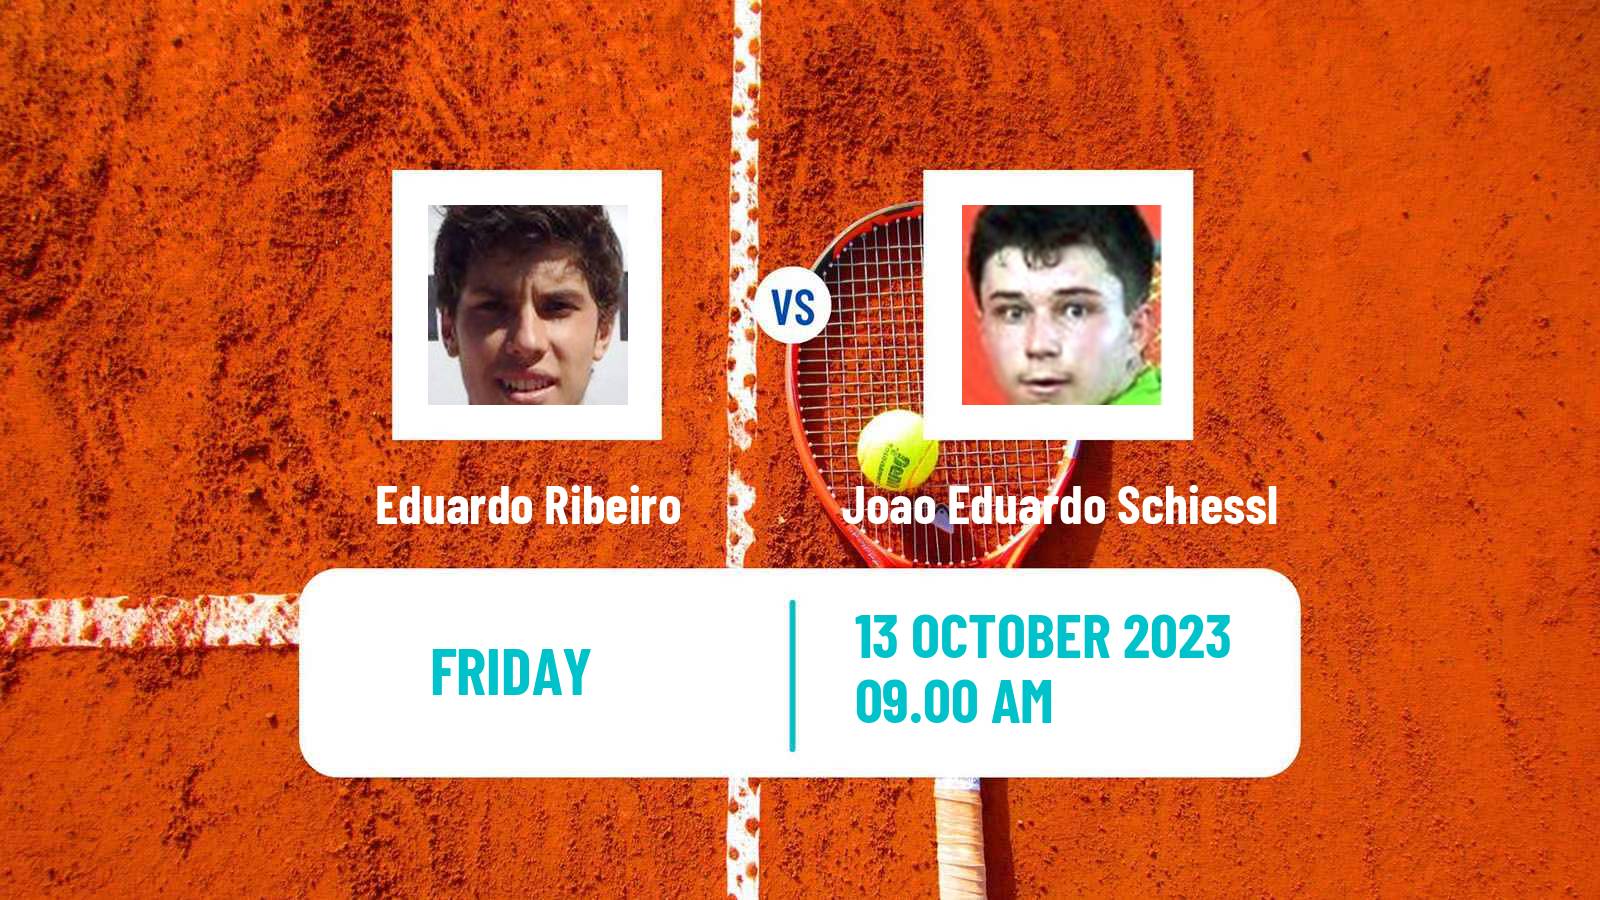 Tennis ITF M25 Lajeado Men Eduardo Ribeiro - Joao Eduardo Schiessl